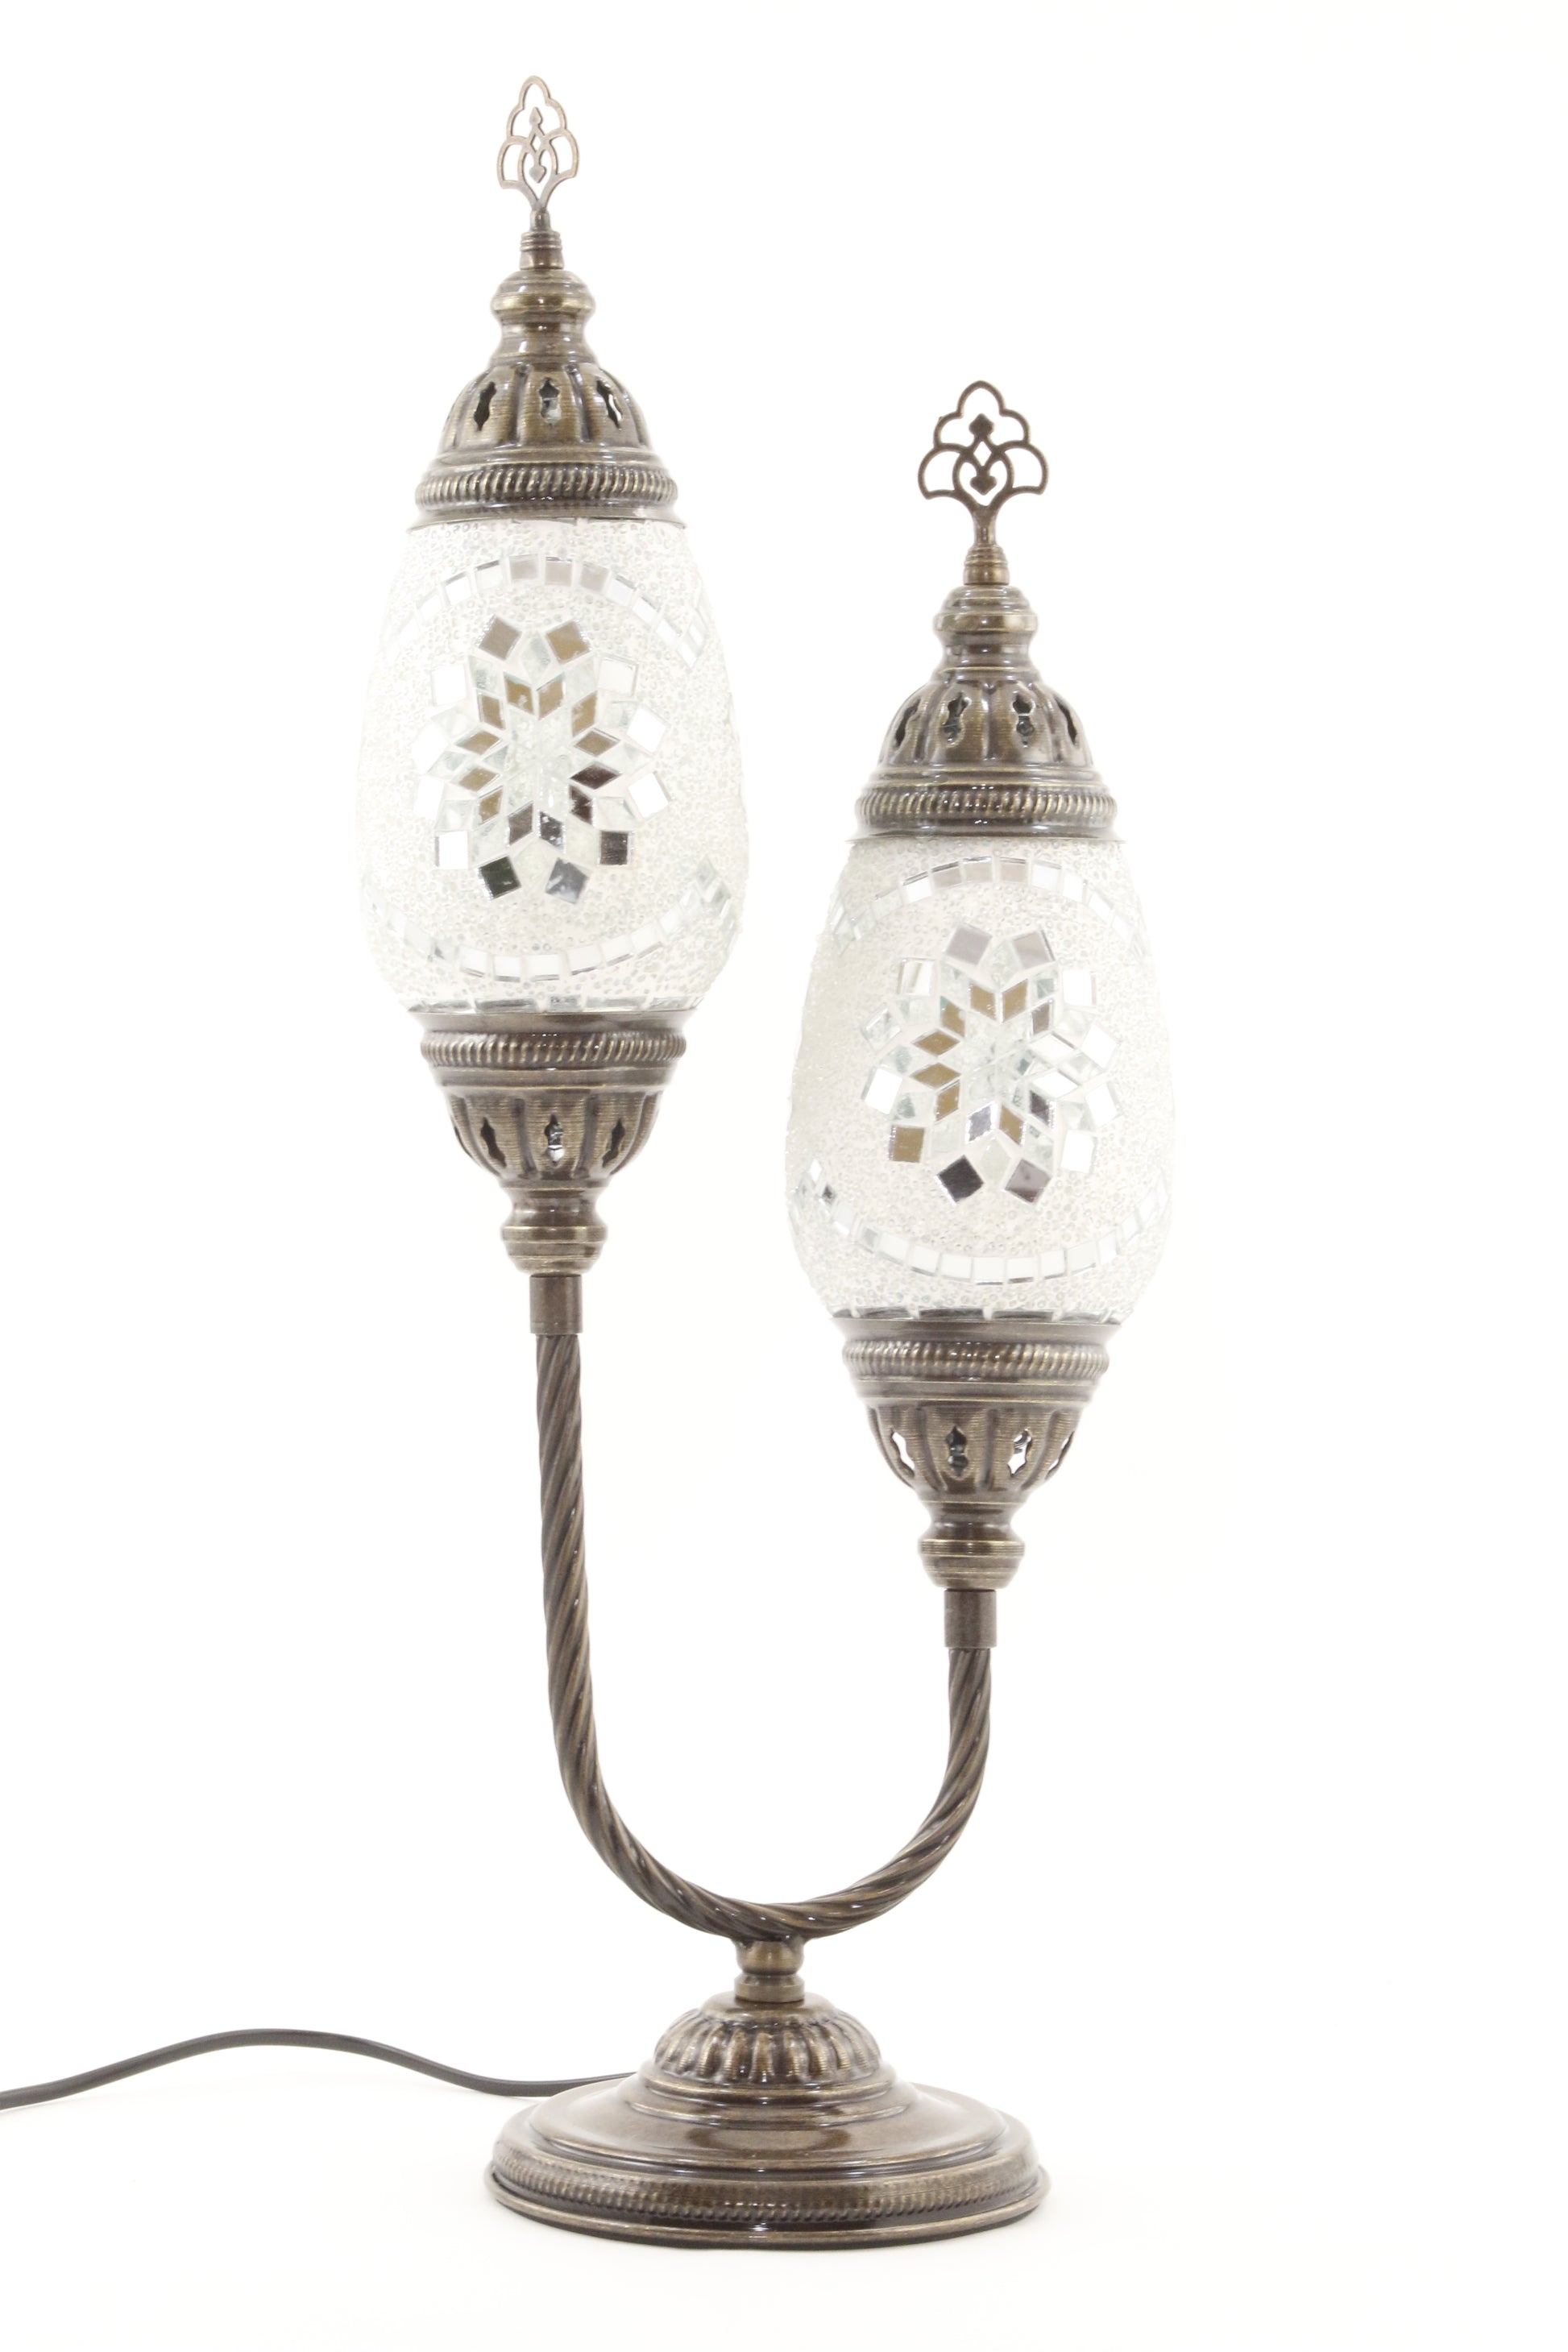 DOUBLE HORSESHOE EGG SHAPED TURKISH MOSAIC TABLE LAMP WHITE -TURNED OFF